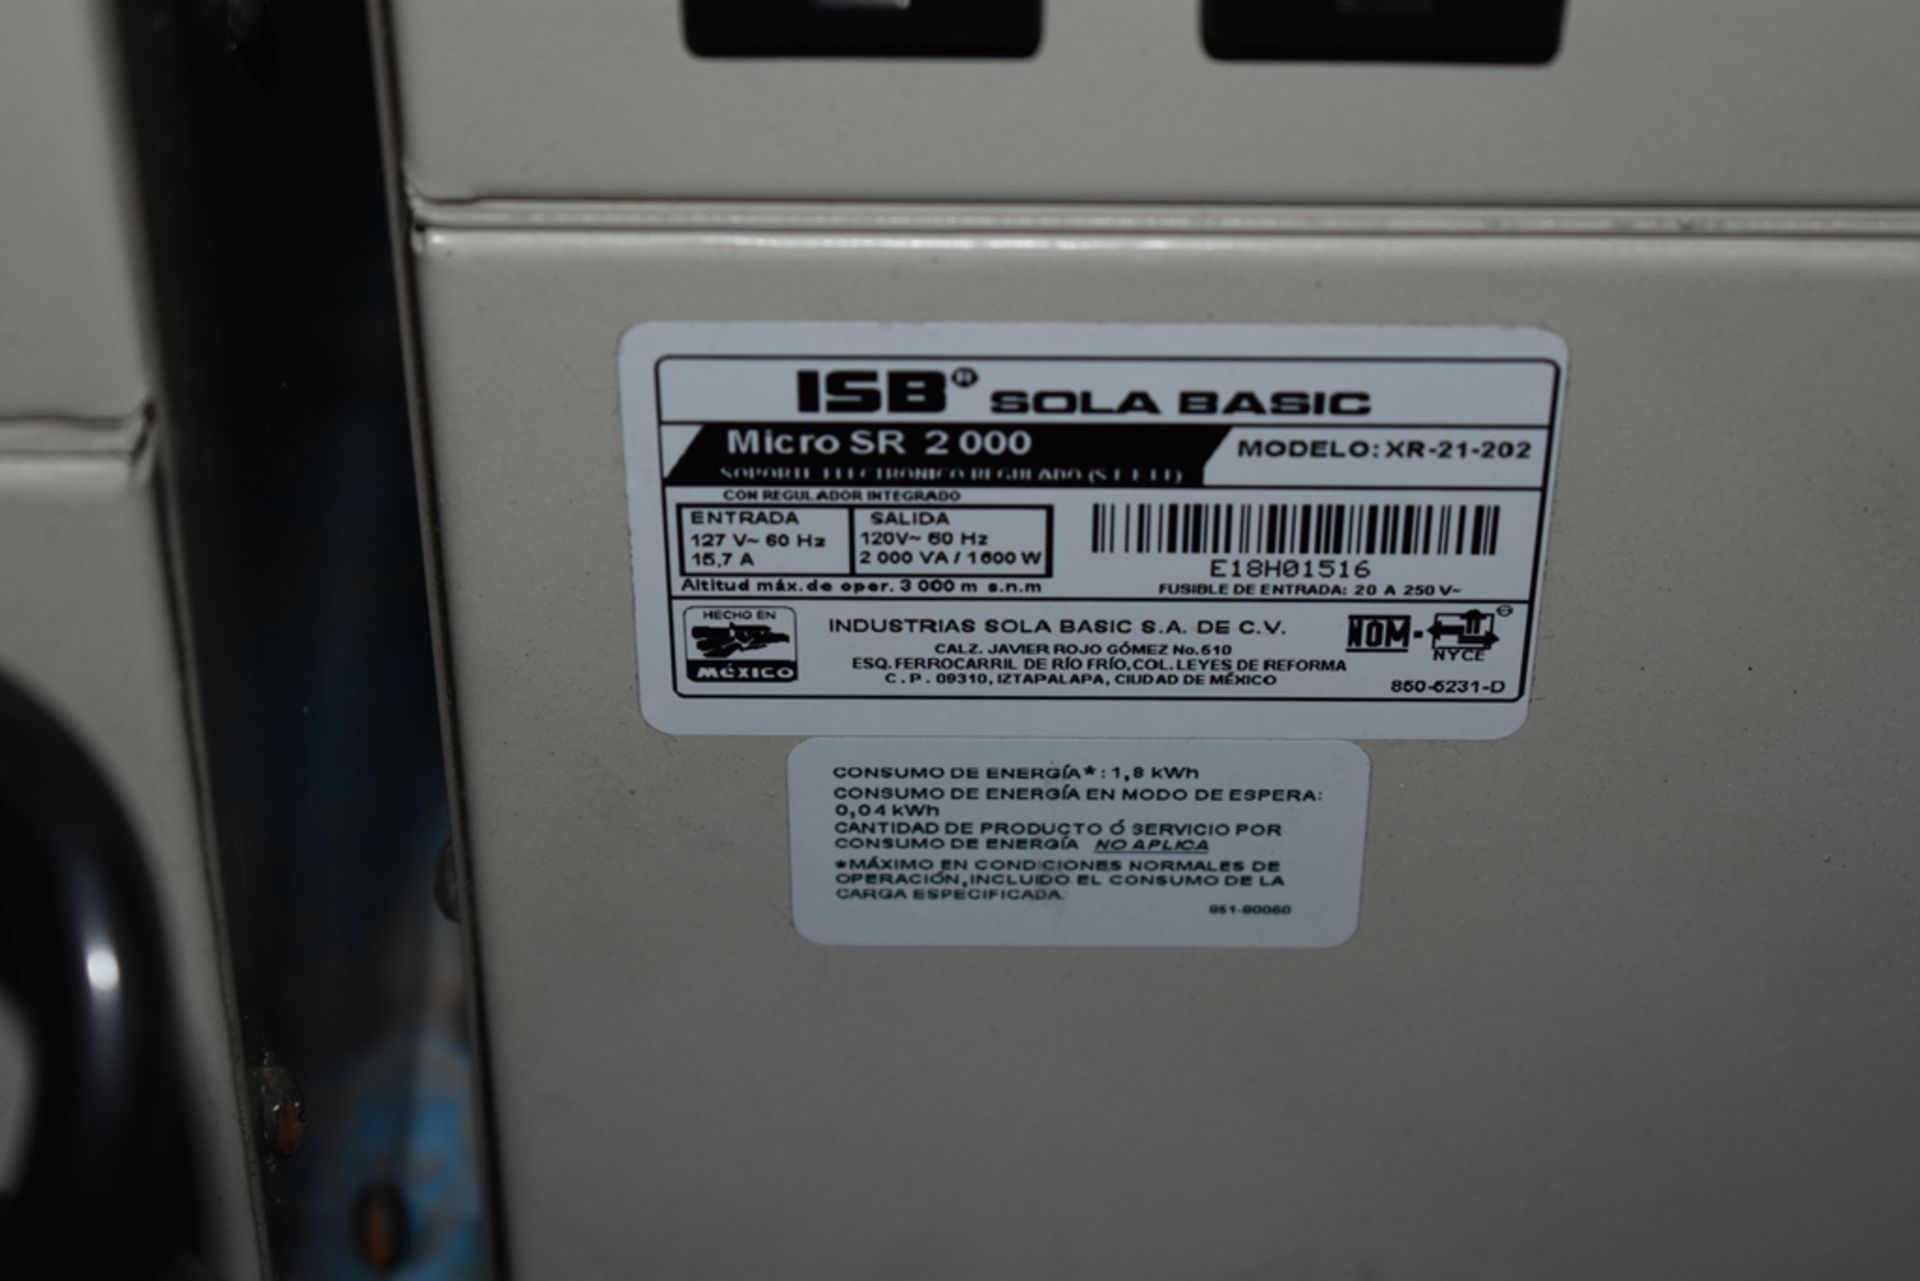 Dos reguladores de voltaje marca ISB Solabasic, modelo: XR-21-202, Series: E18F02675, E18H01516 - Image 12 of 17